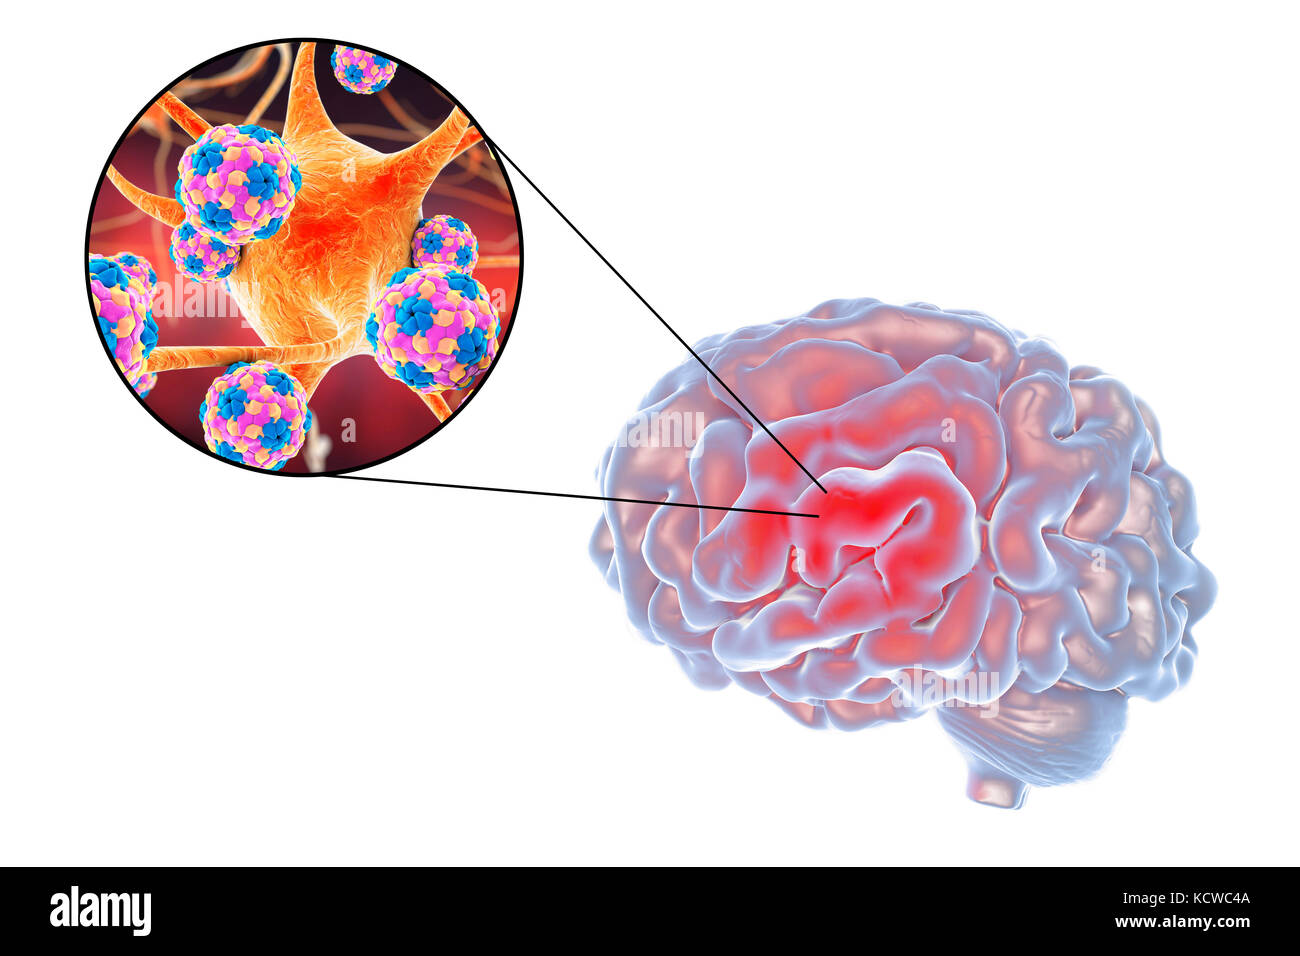 Энцефалит головного мозга у взрослых